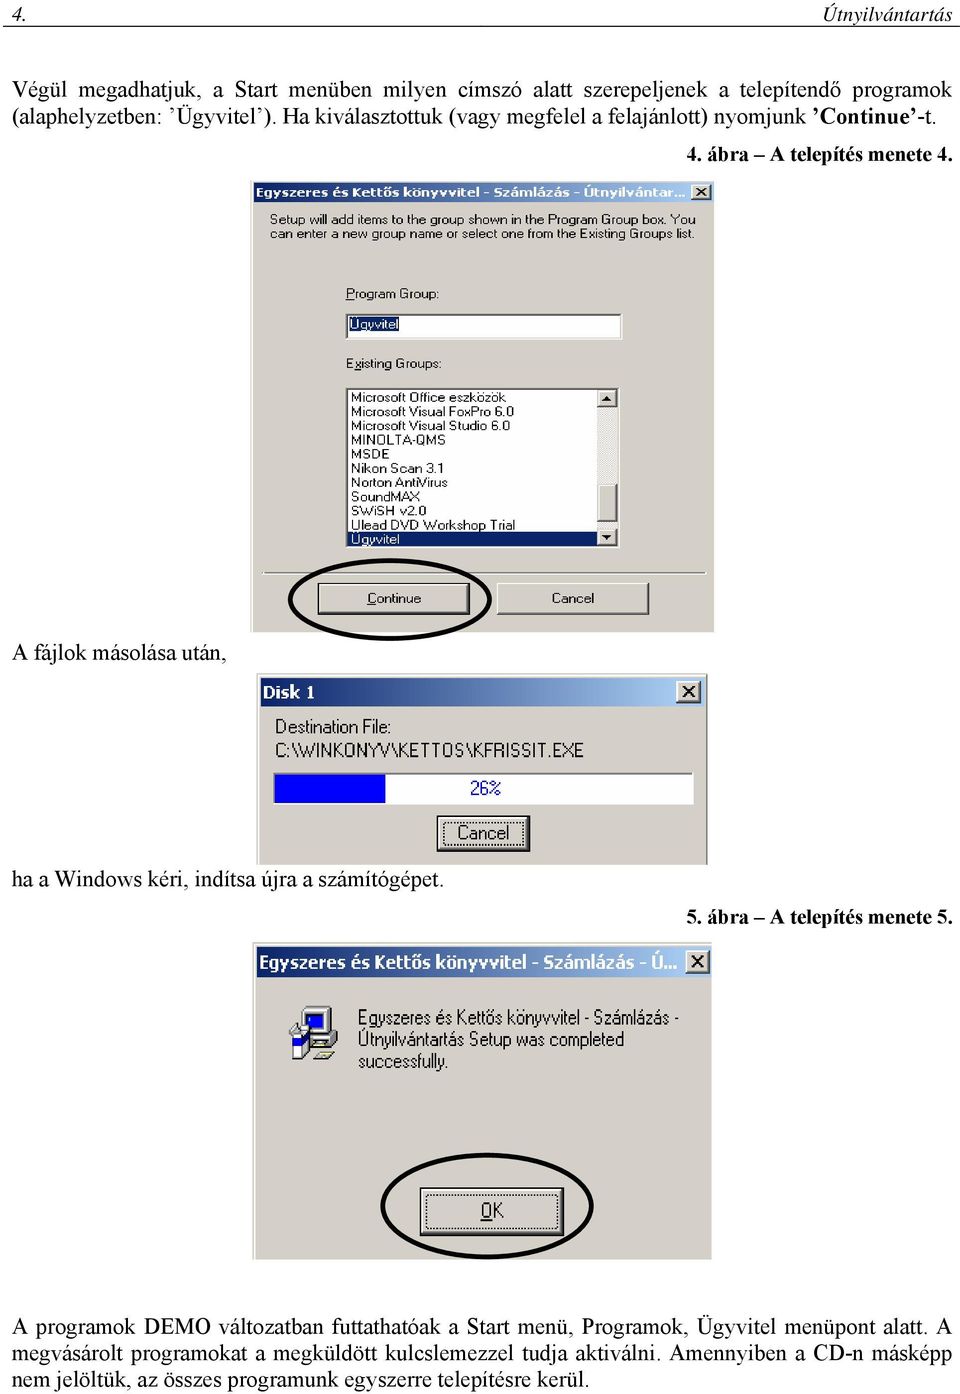 A fájlok másolása után, ha a Windows kéri, indítsa újra a számítógépet. 5. ábra A telepítés menete 5.